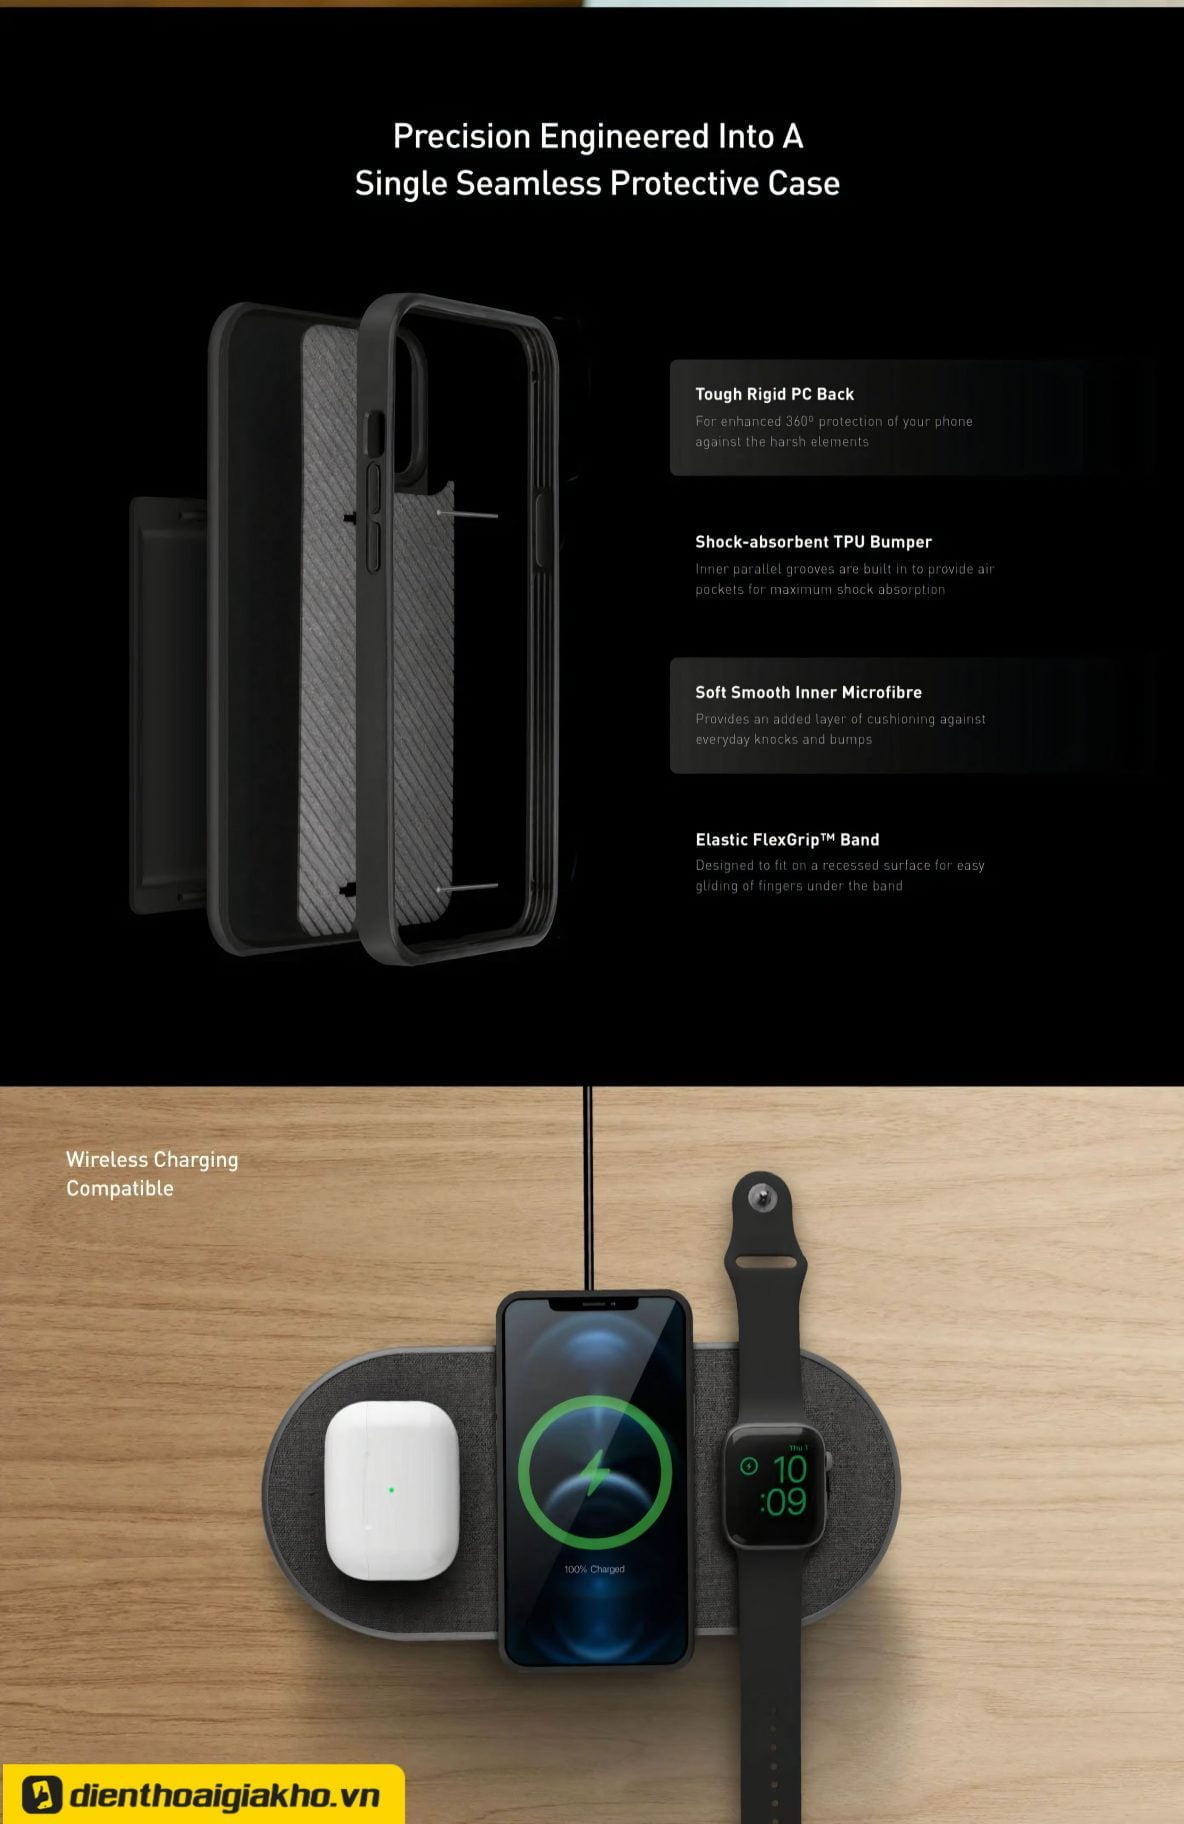 Những tính năng nổi bật của case iPhone 12 Pro Max